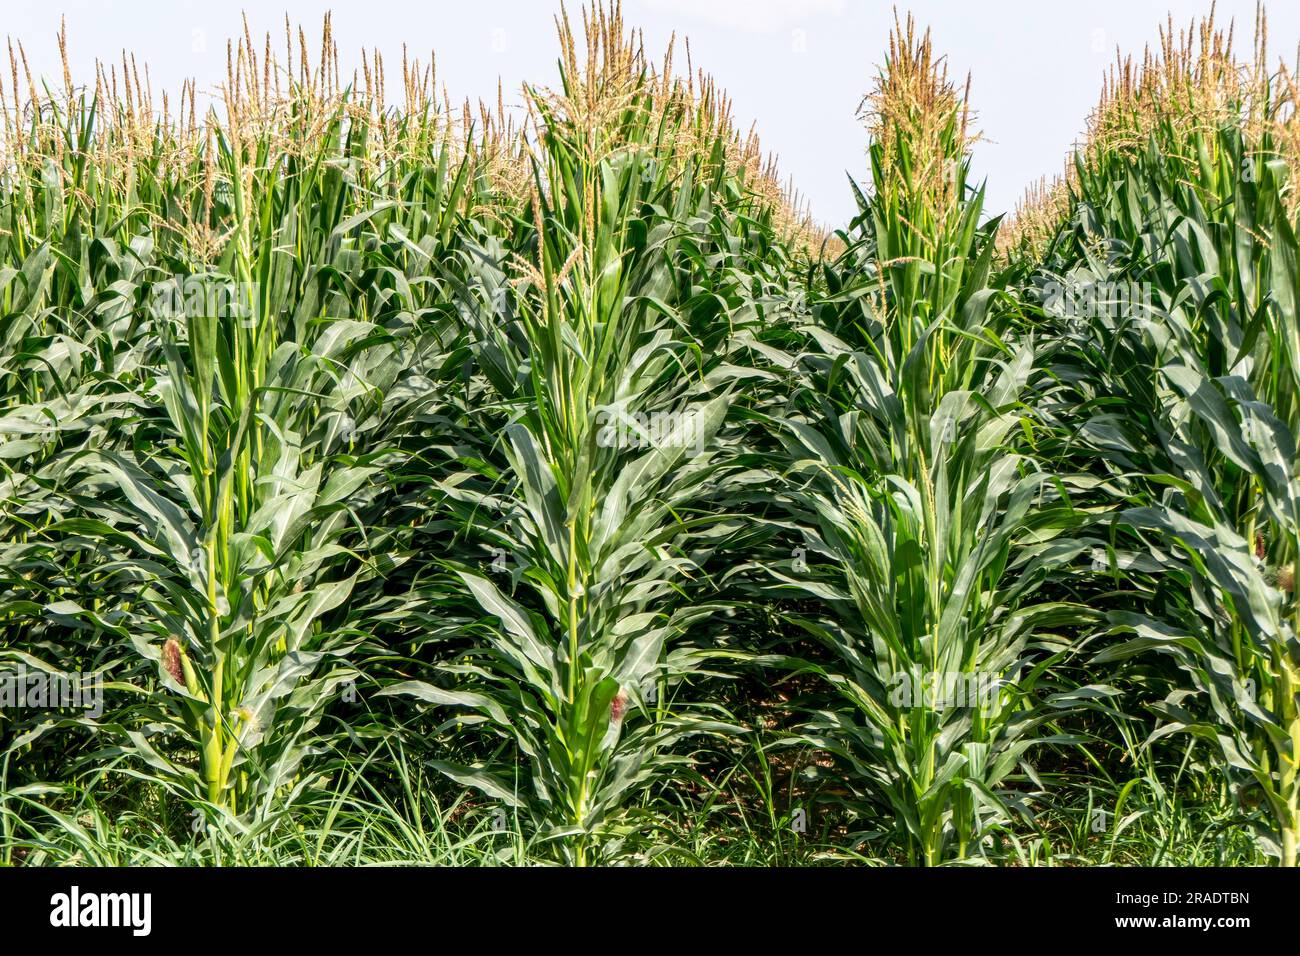 Ackerland mit blühendem Mais. Grüne Stämme, junge Maiskolben. Israel Stockfoto